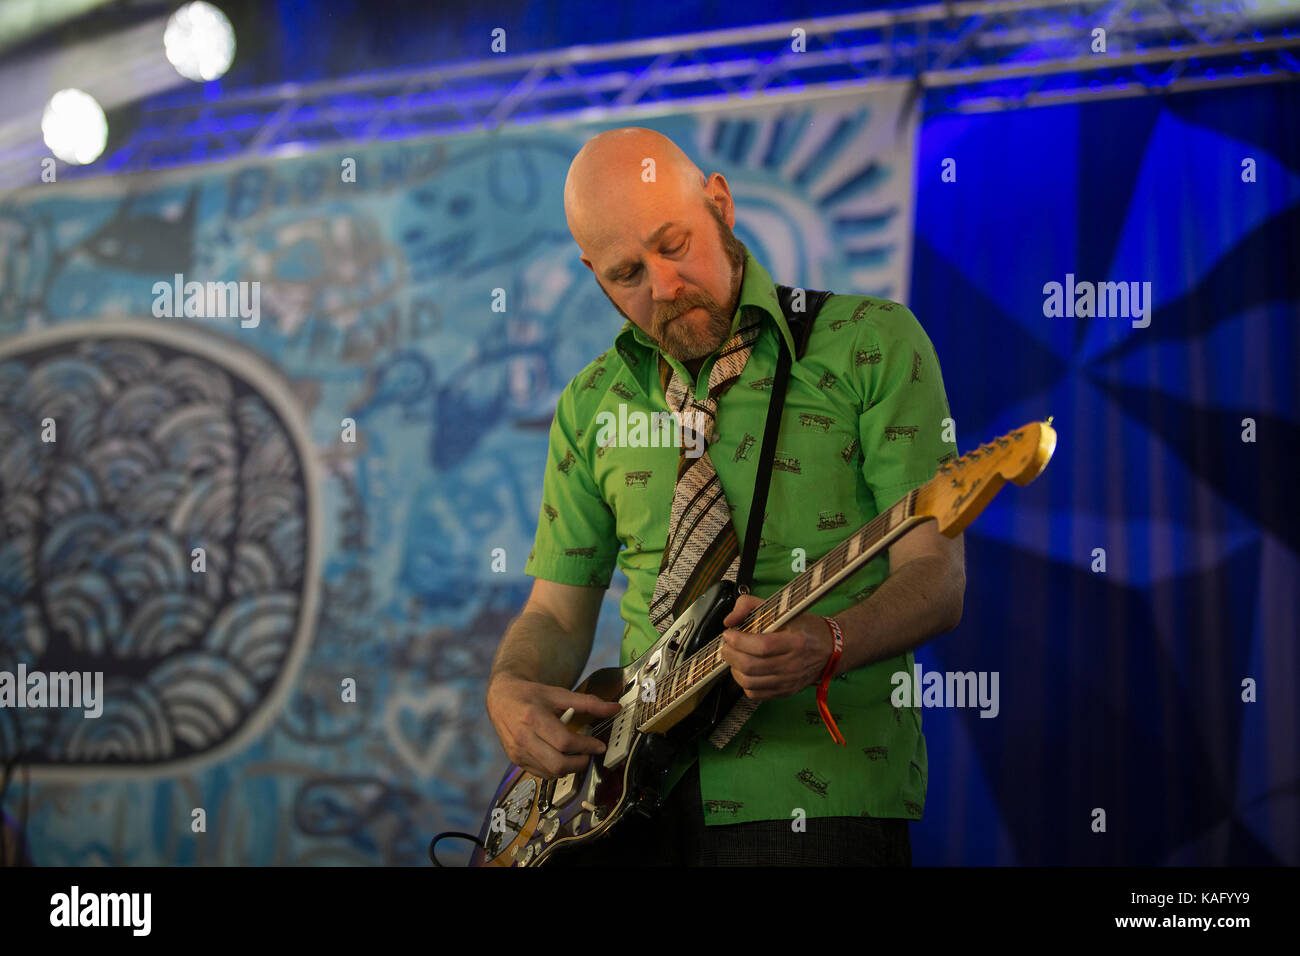 La svedese indie rock band di Bob Hund esegue un concerto dal vivo all'Avalon Stage presso il Danish music festival Roskilde Festival 2015. Qui il chitarrista Johnny Essing è raffigurato dal vivo sul palco. Danimarca, 01/07 2015. Foto Stock